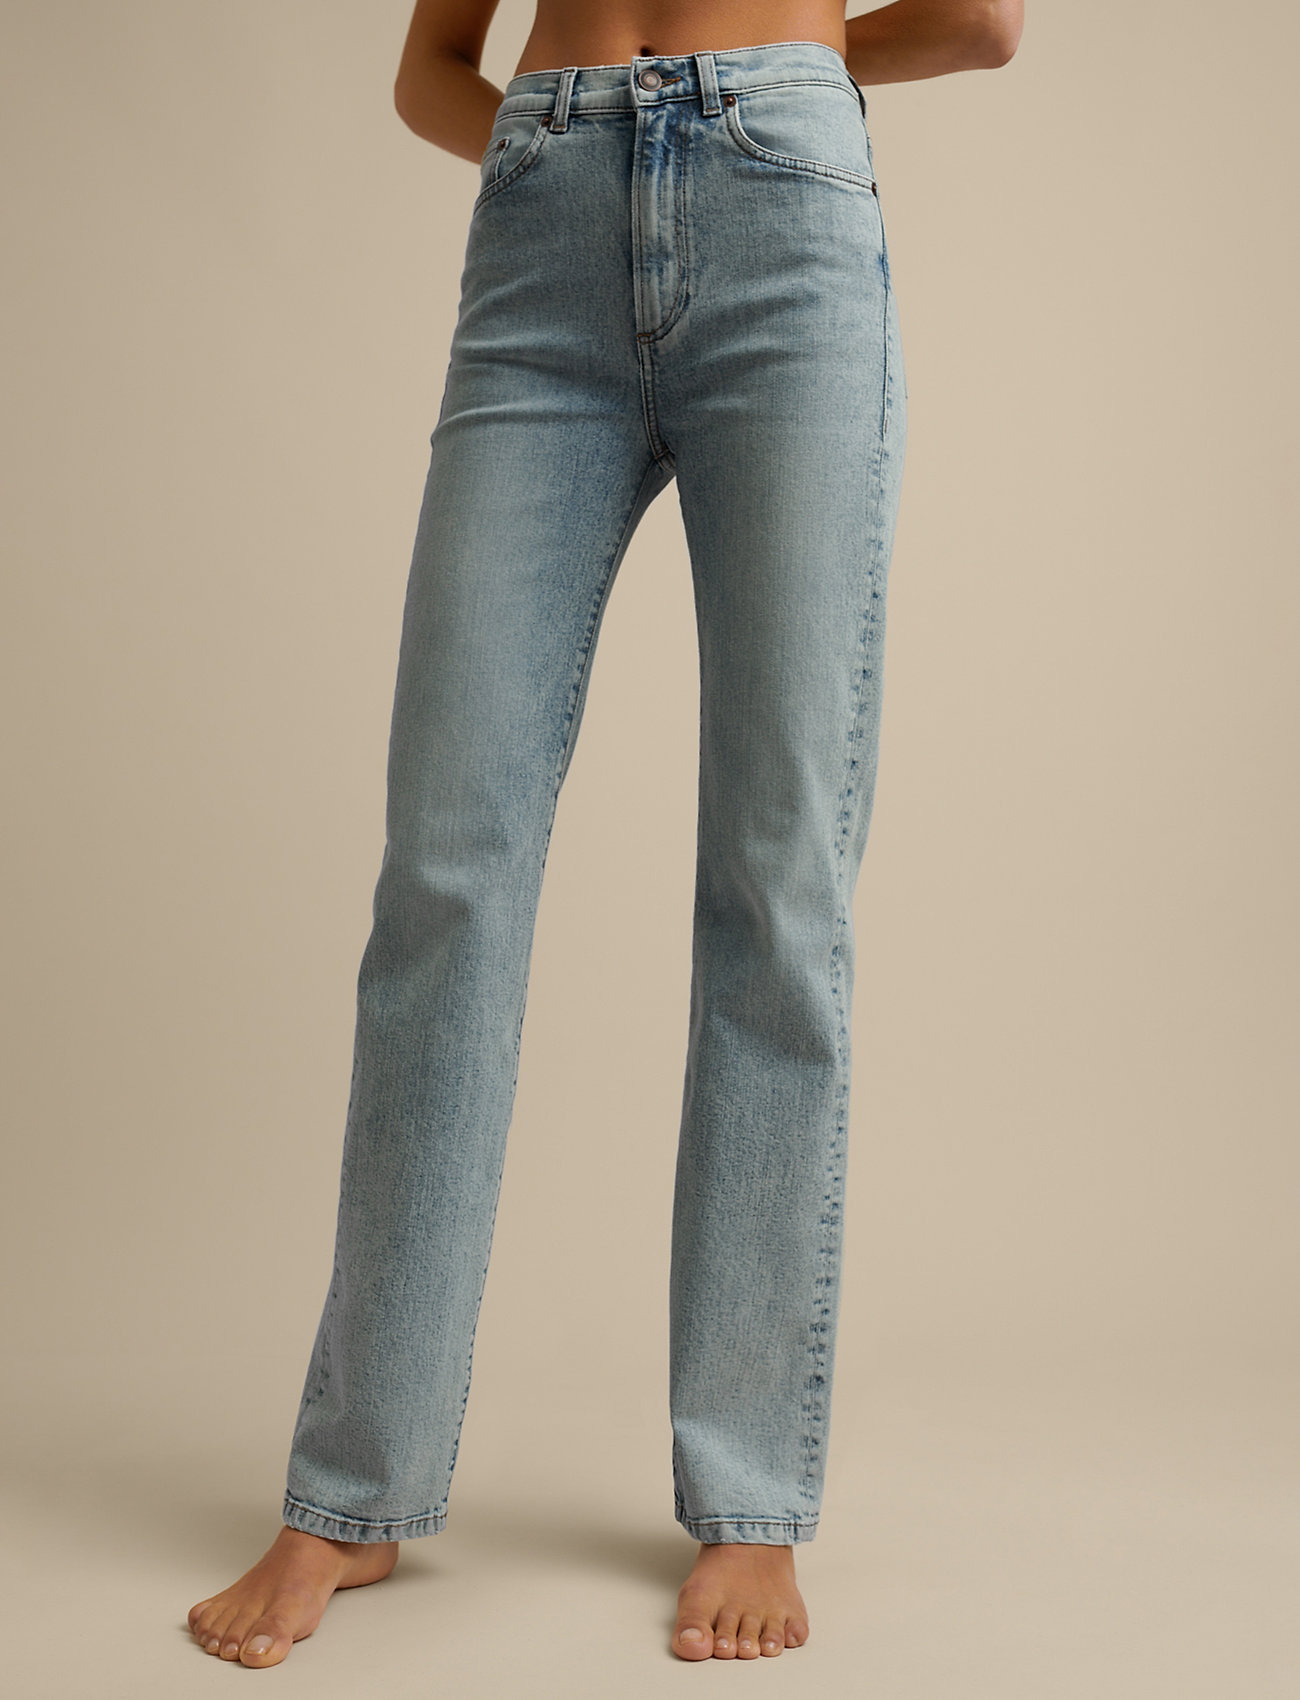 Jeanerica - EW004 - raka jeans - vintage 82 - 0